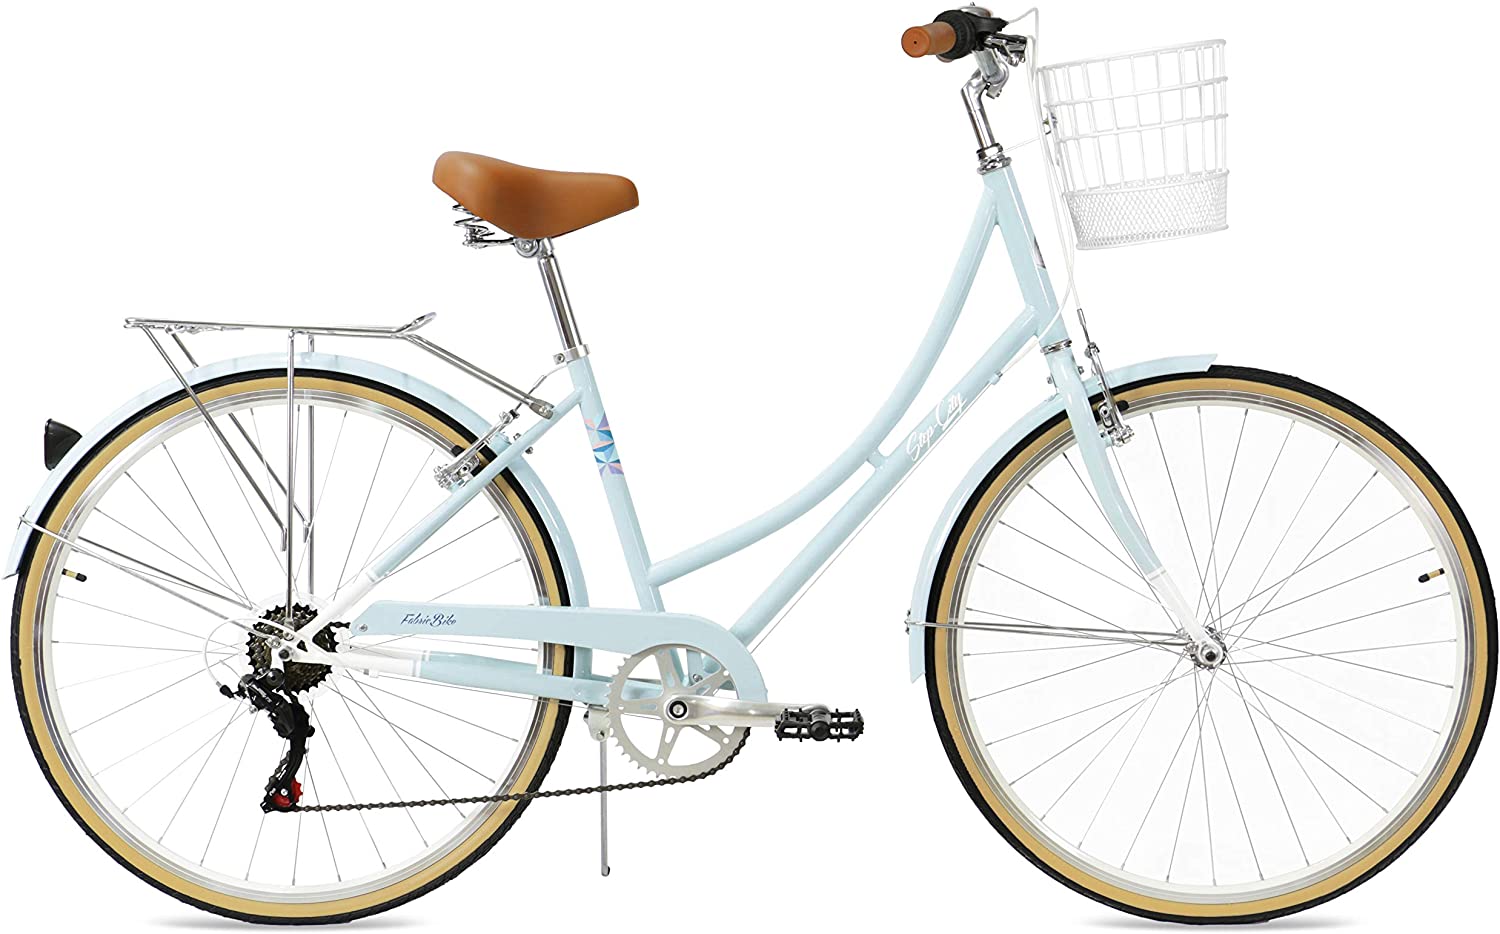 Las bicicletas más recomendables para regalar en Papá Noel 2020